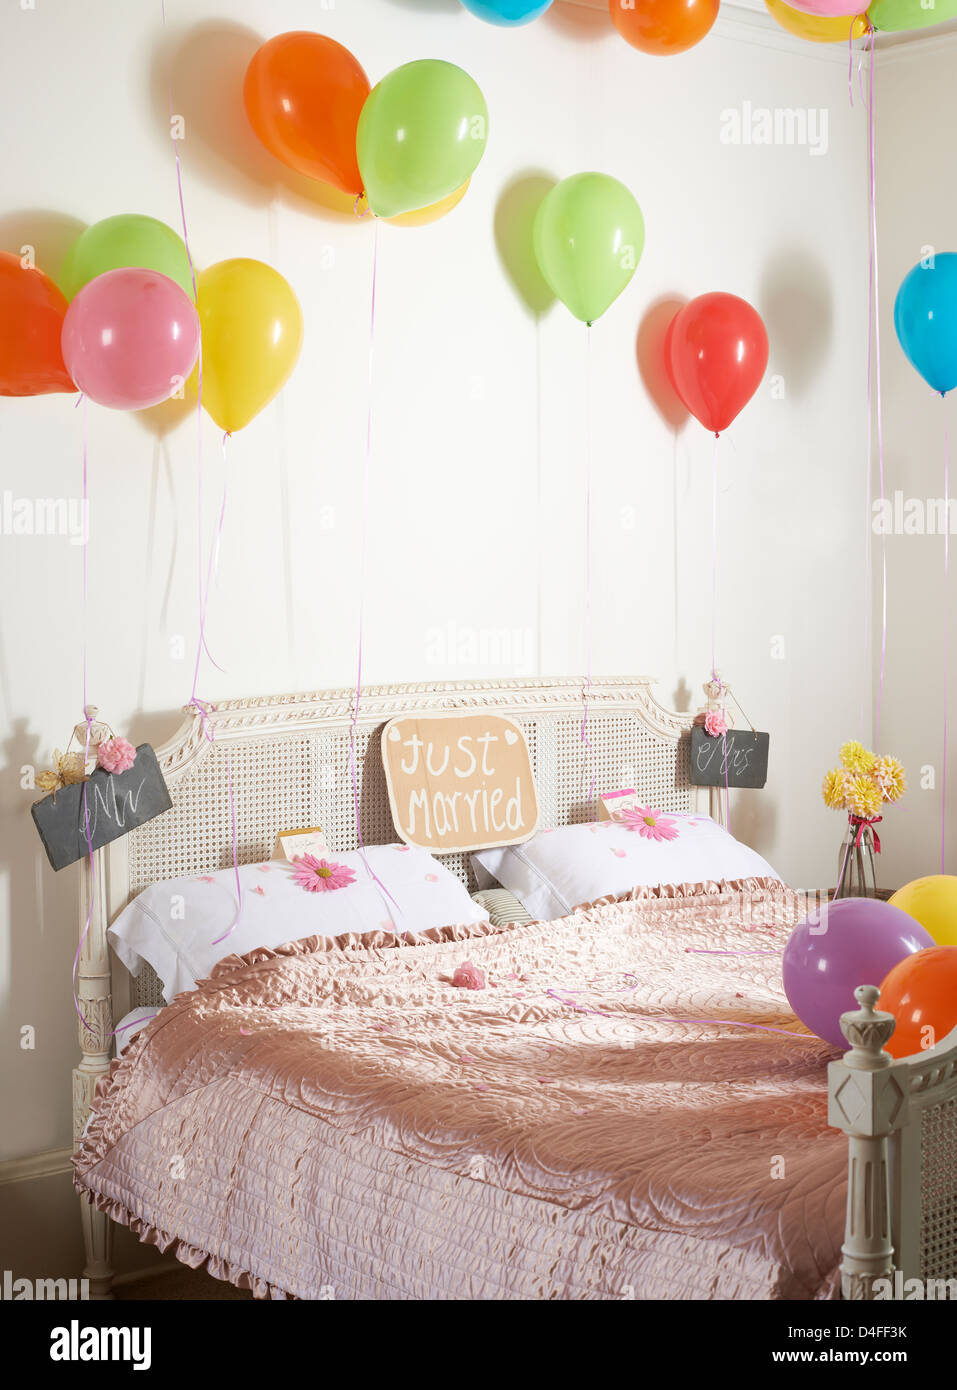 Palloncini colorati su letto matrimoniale Foto Stock